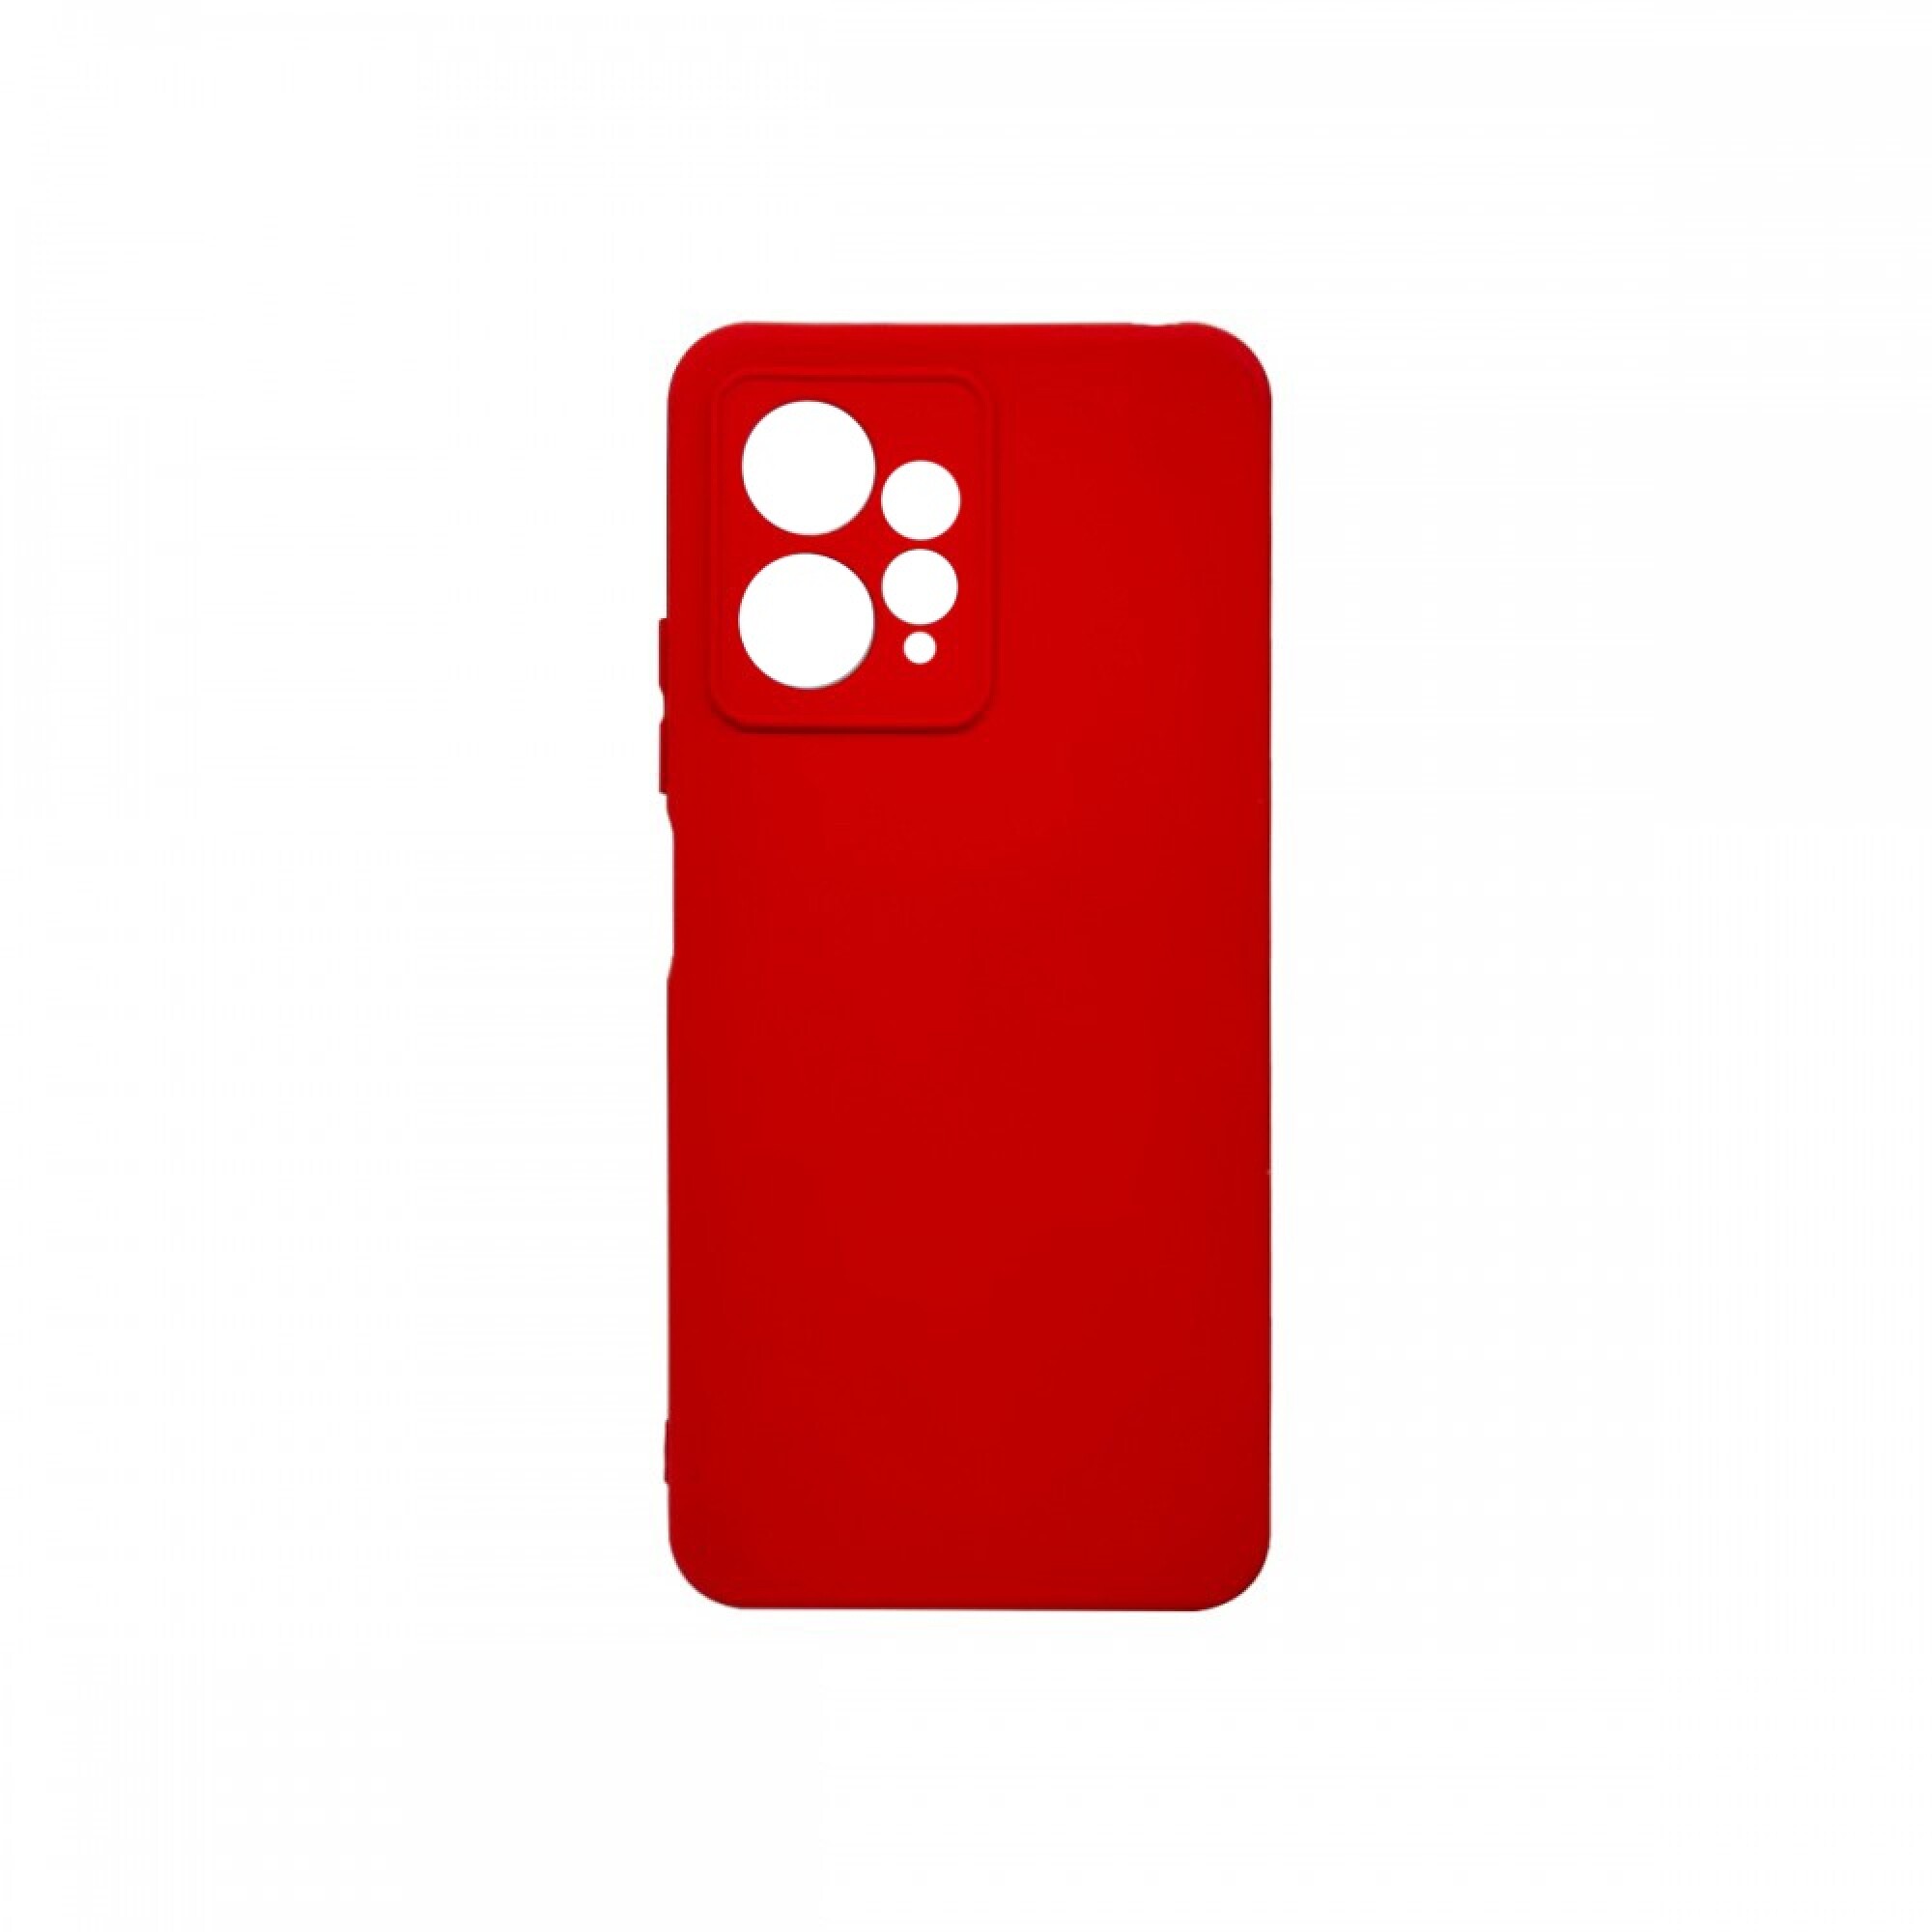 Comprar Funda de Silicona para Xiaomi Redmi Note 9 Pro Roja - Los